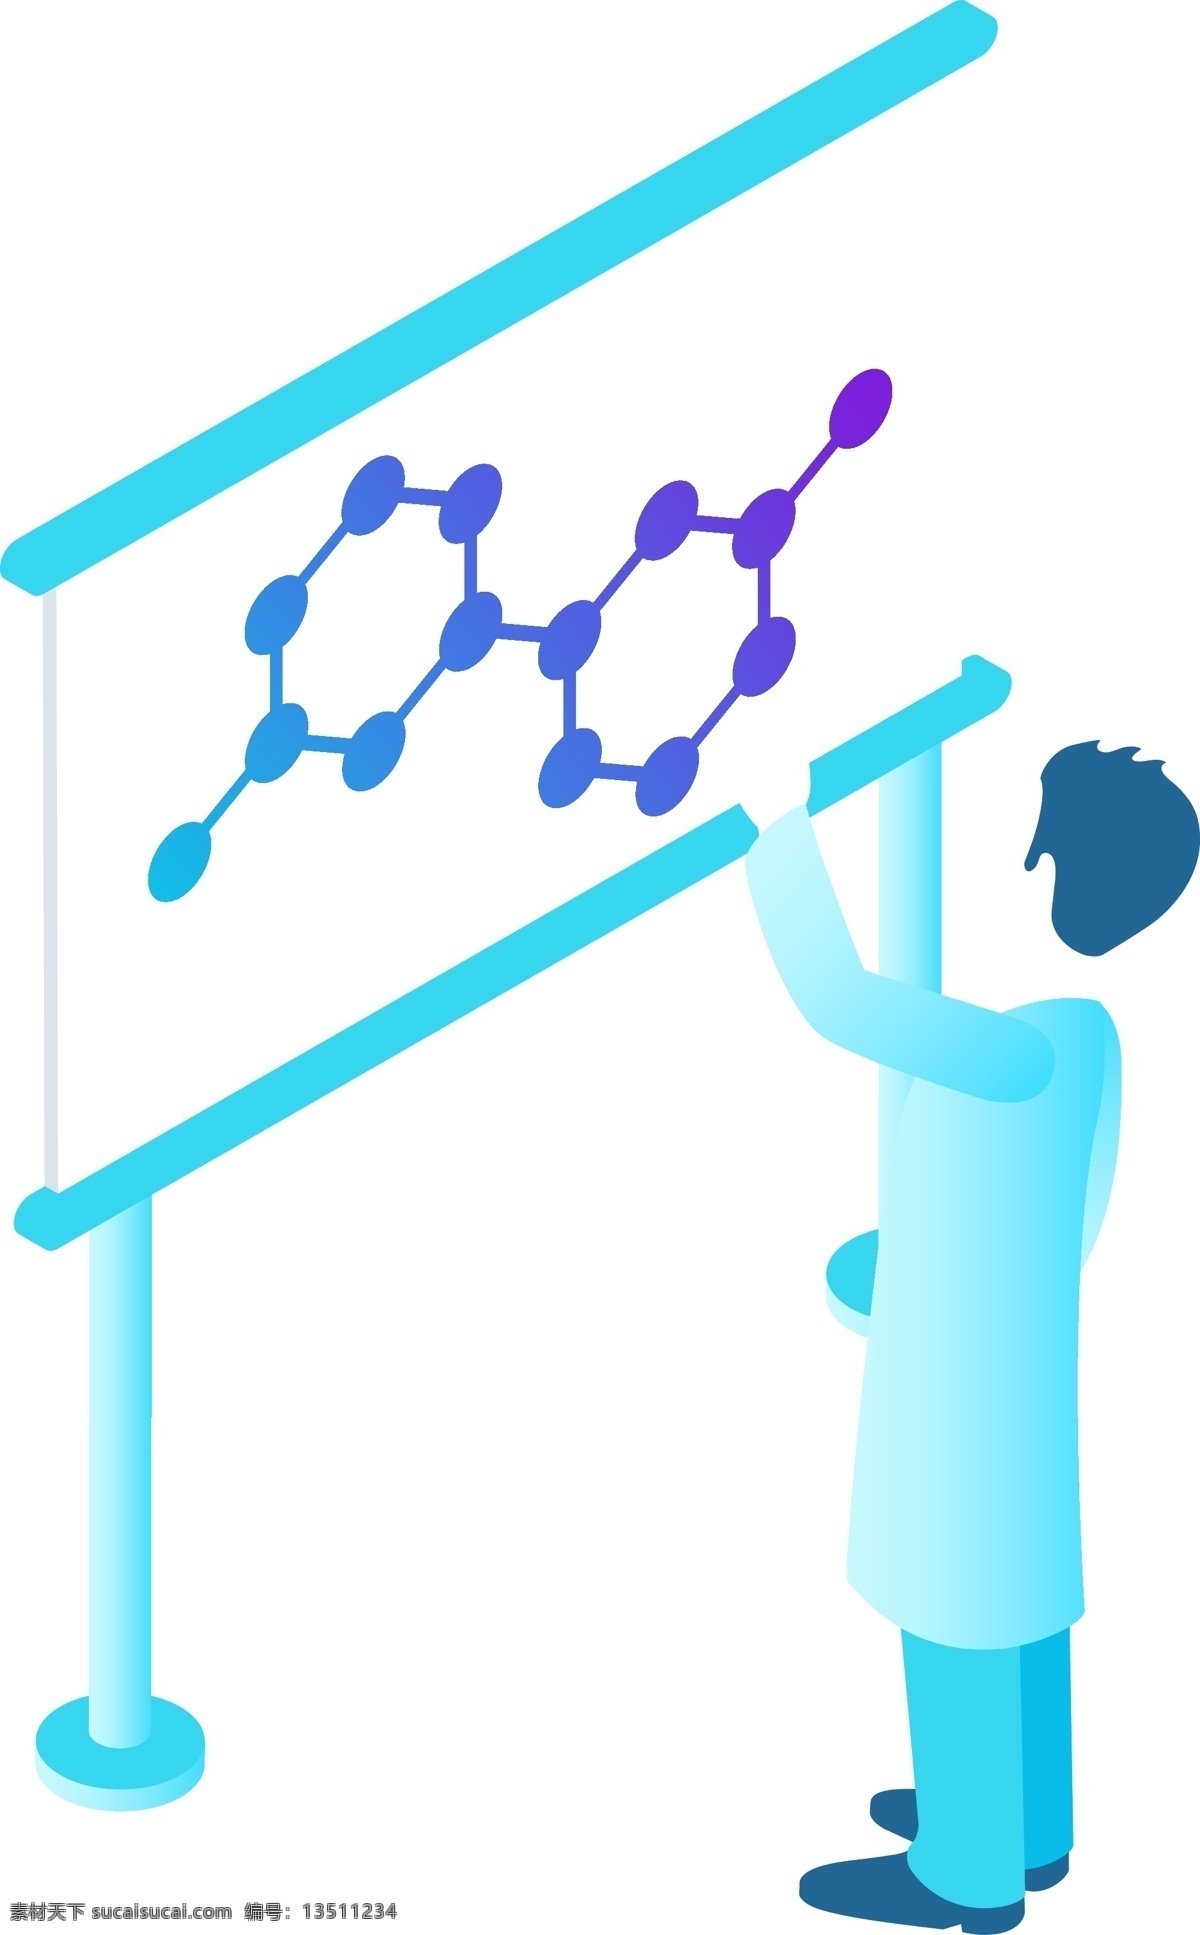 手绘 男人 做 实验 分子 图 原创 元素 科技 简约 绘画 蓝色 分子图 原创元素 设计元素